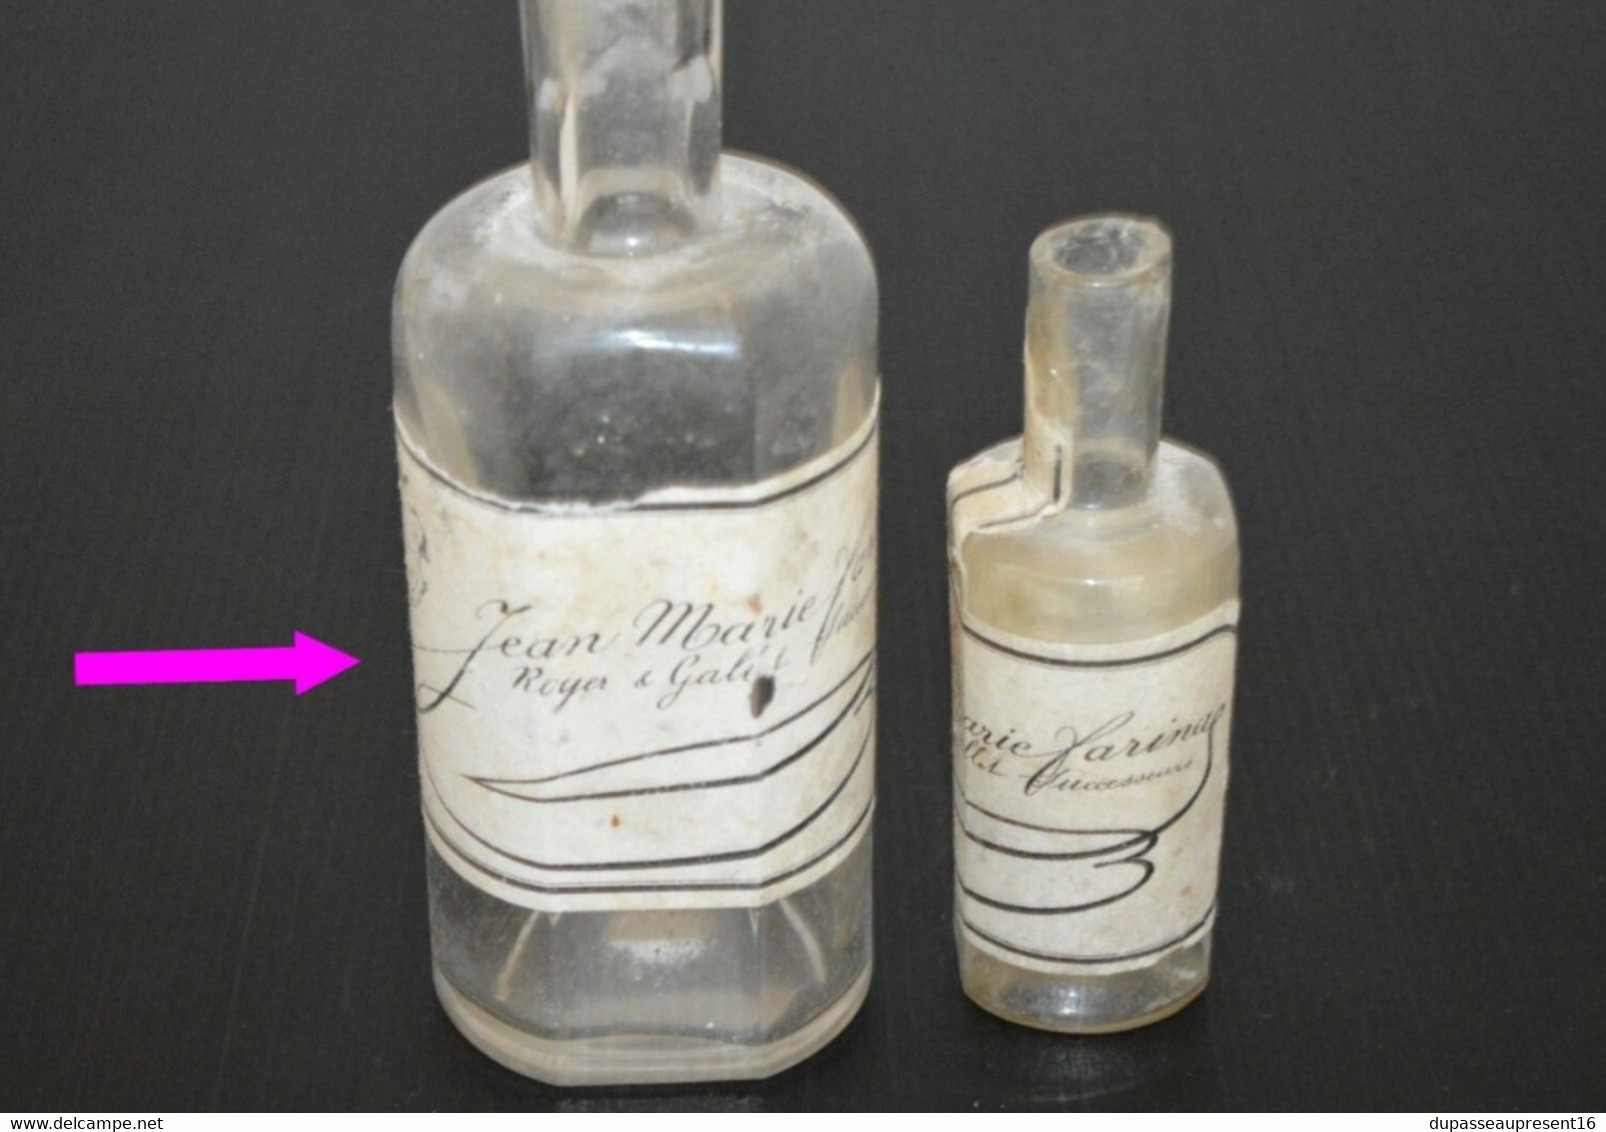 ANCIEN FLACON parfum JEAN MARIE FARINA ROGER et GALLET Successeur XIXe vitrine collection déco vitrine